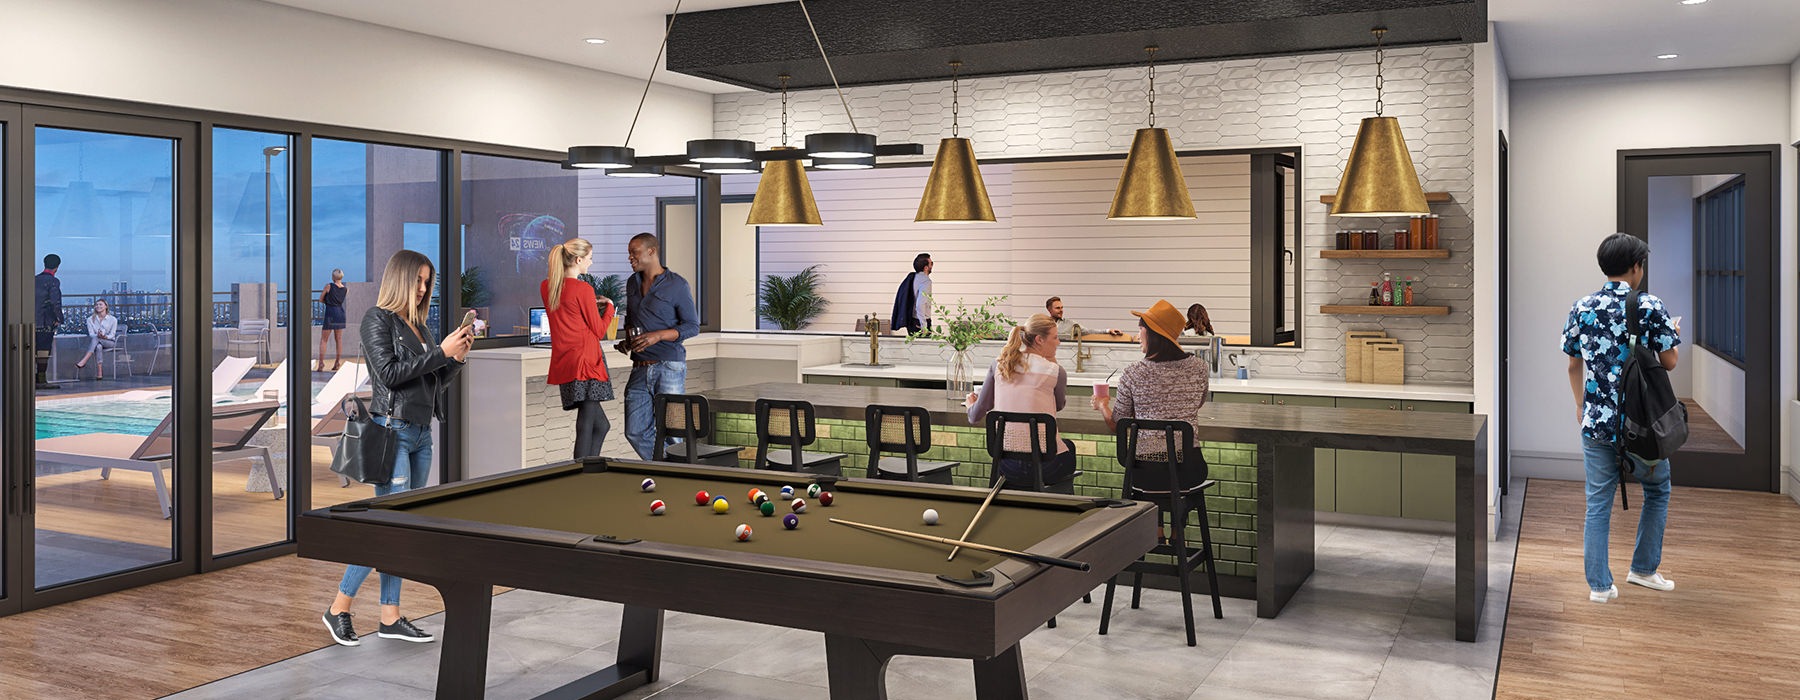 Indoor/outdoor sky lounge features entertainment kitchen